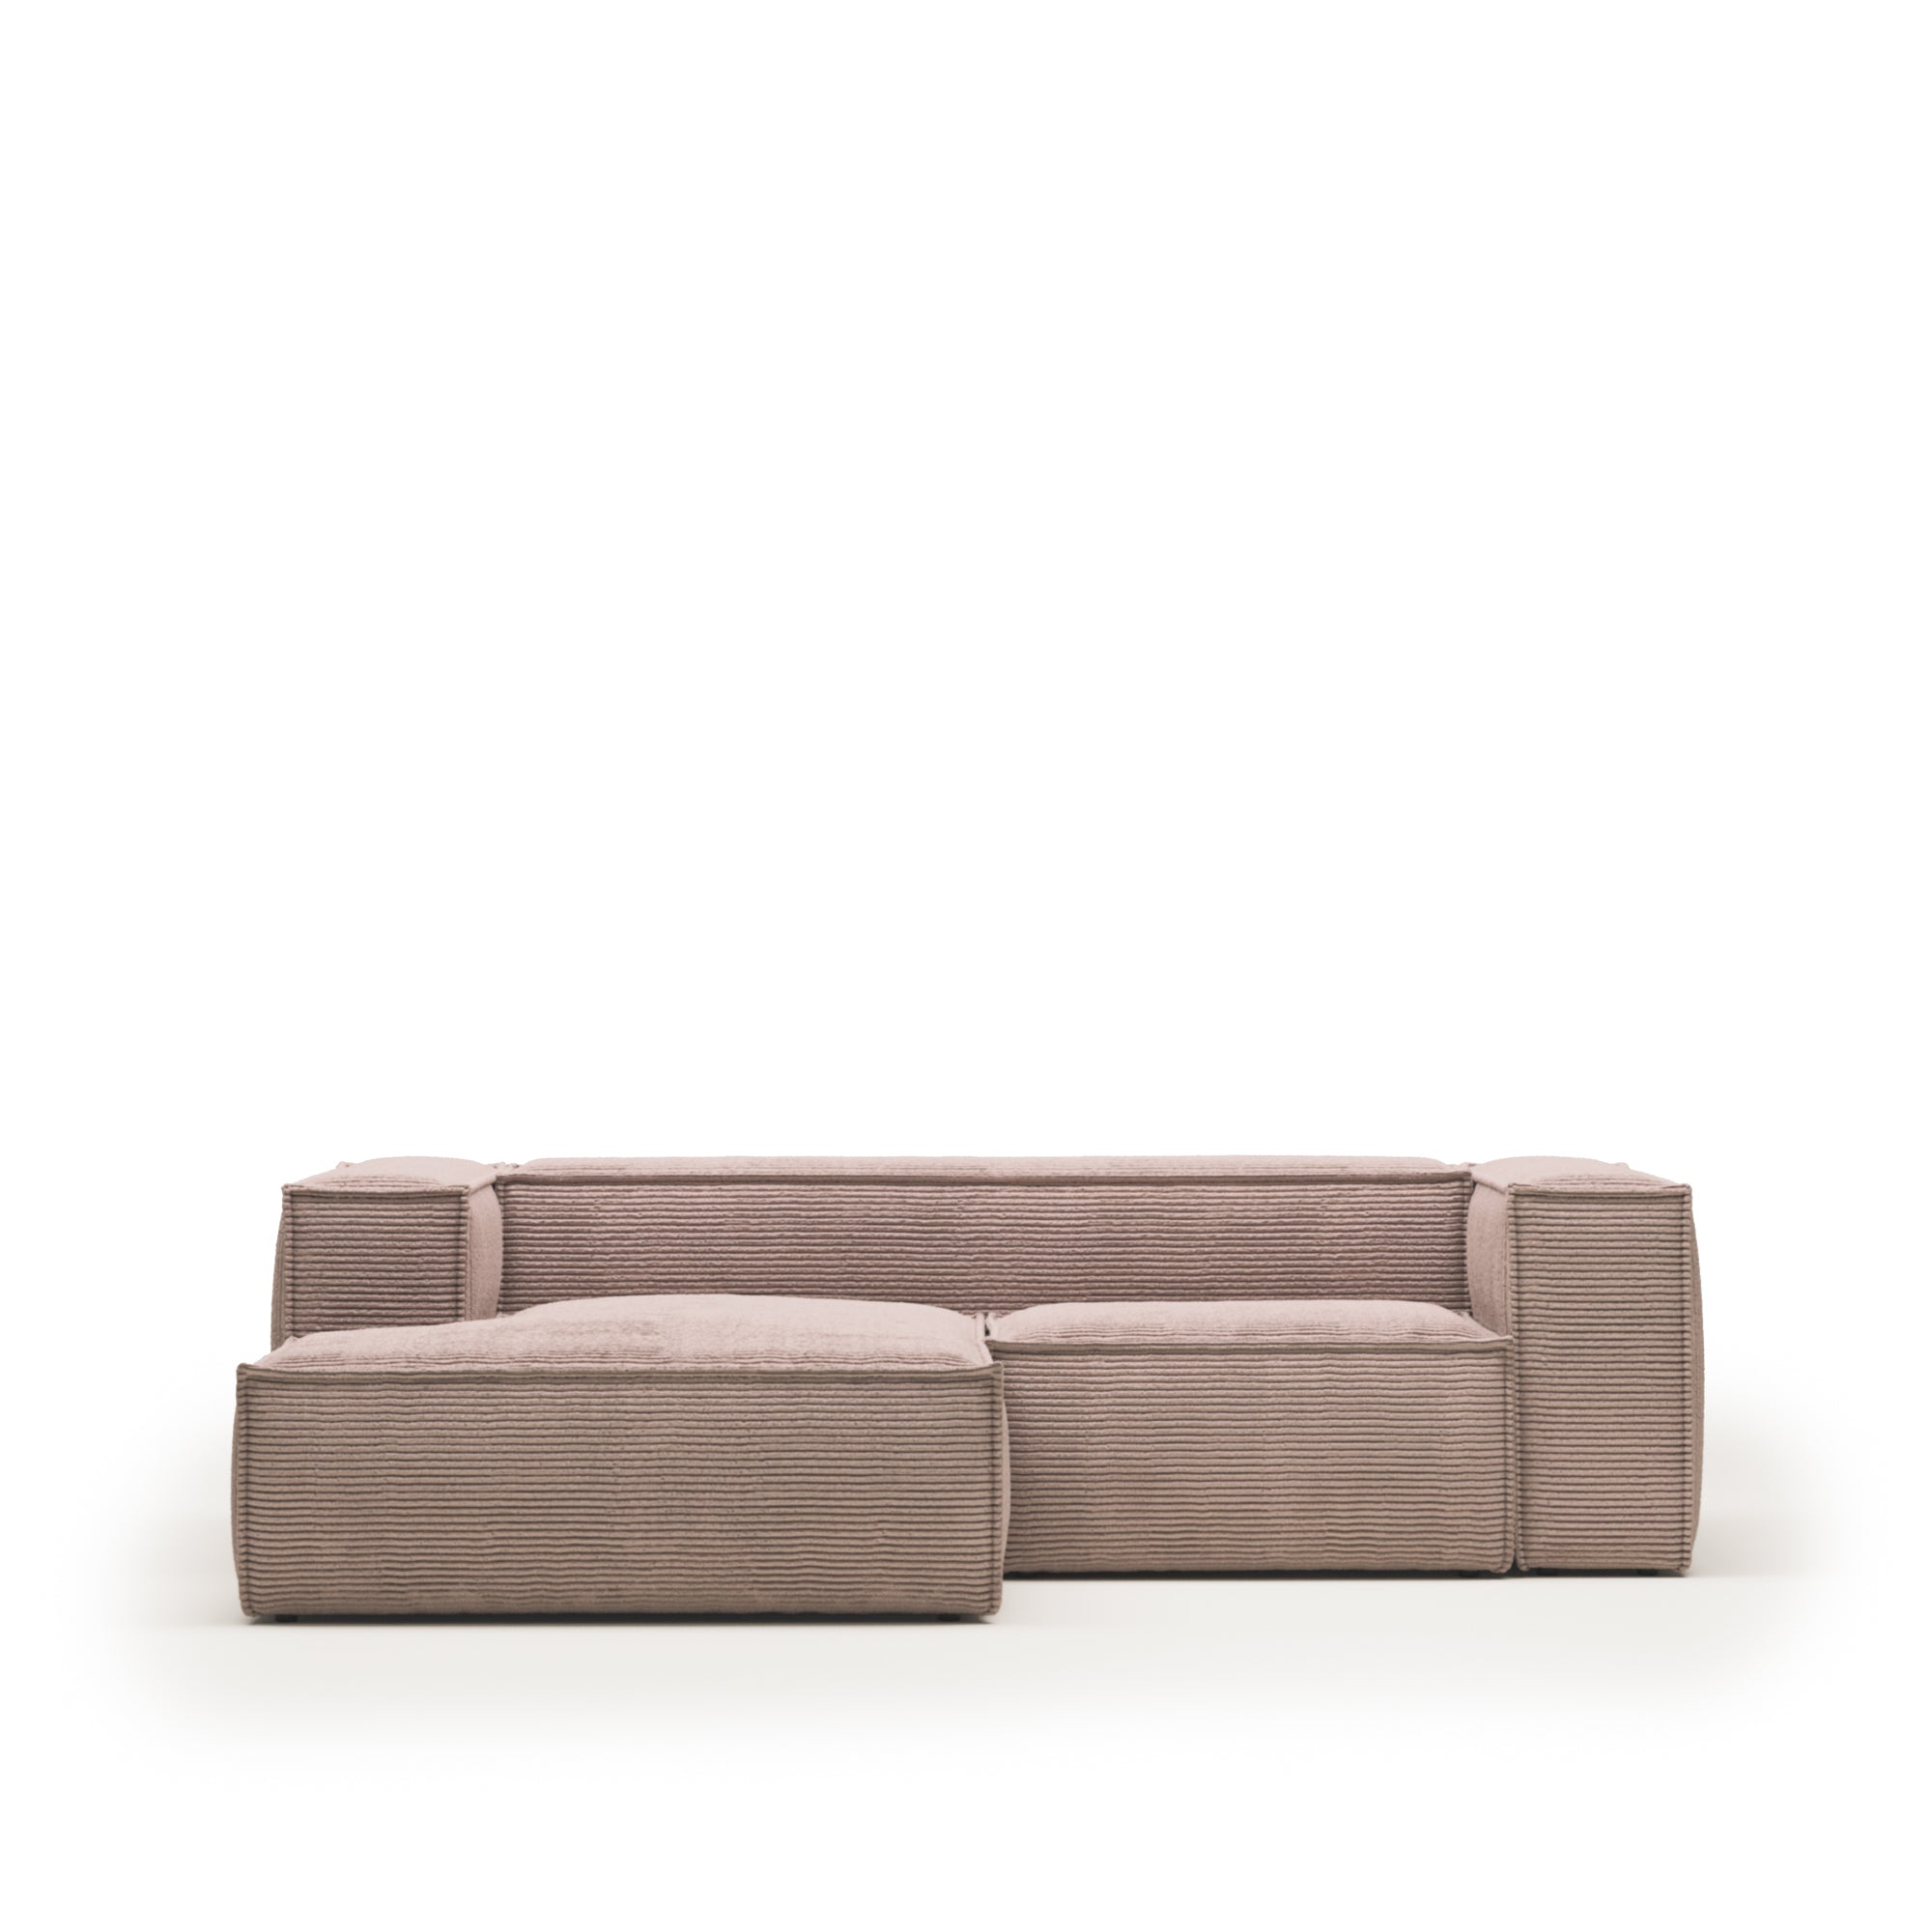 Blok 2 személyes kanapé bal oldali fekvőfotellel, rózsaszín széles varrású kordbársonyból, 240 cm